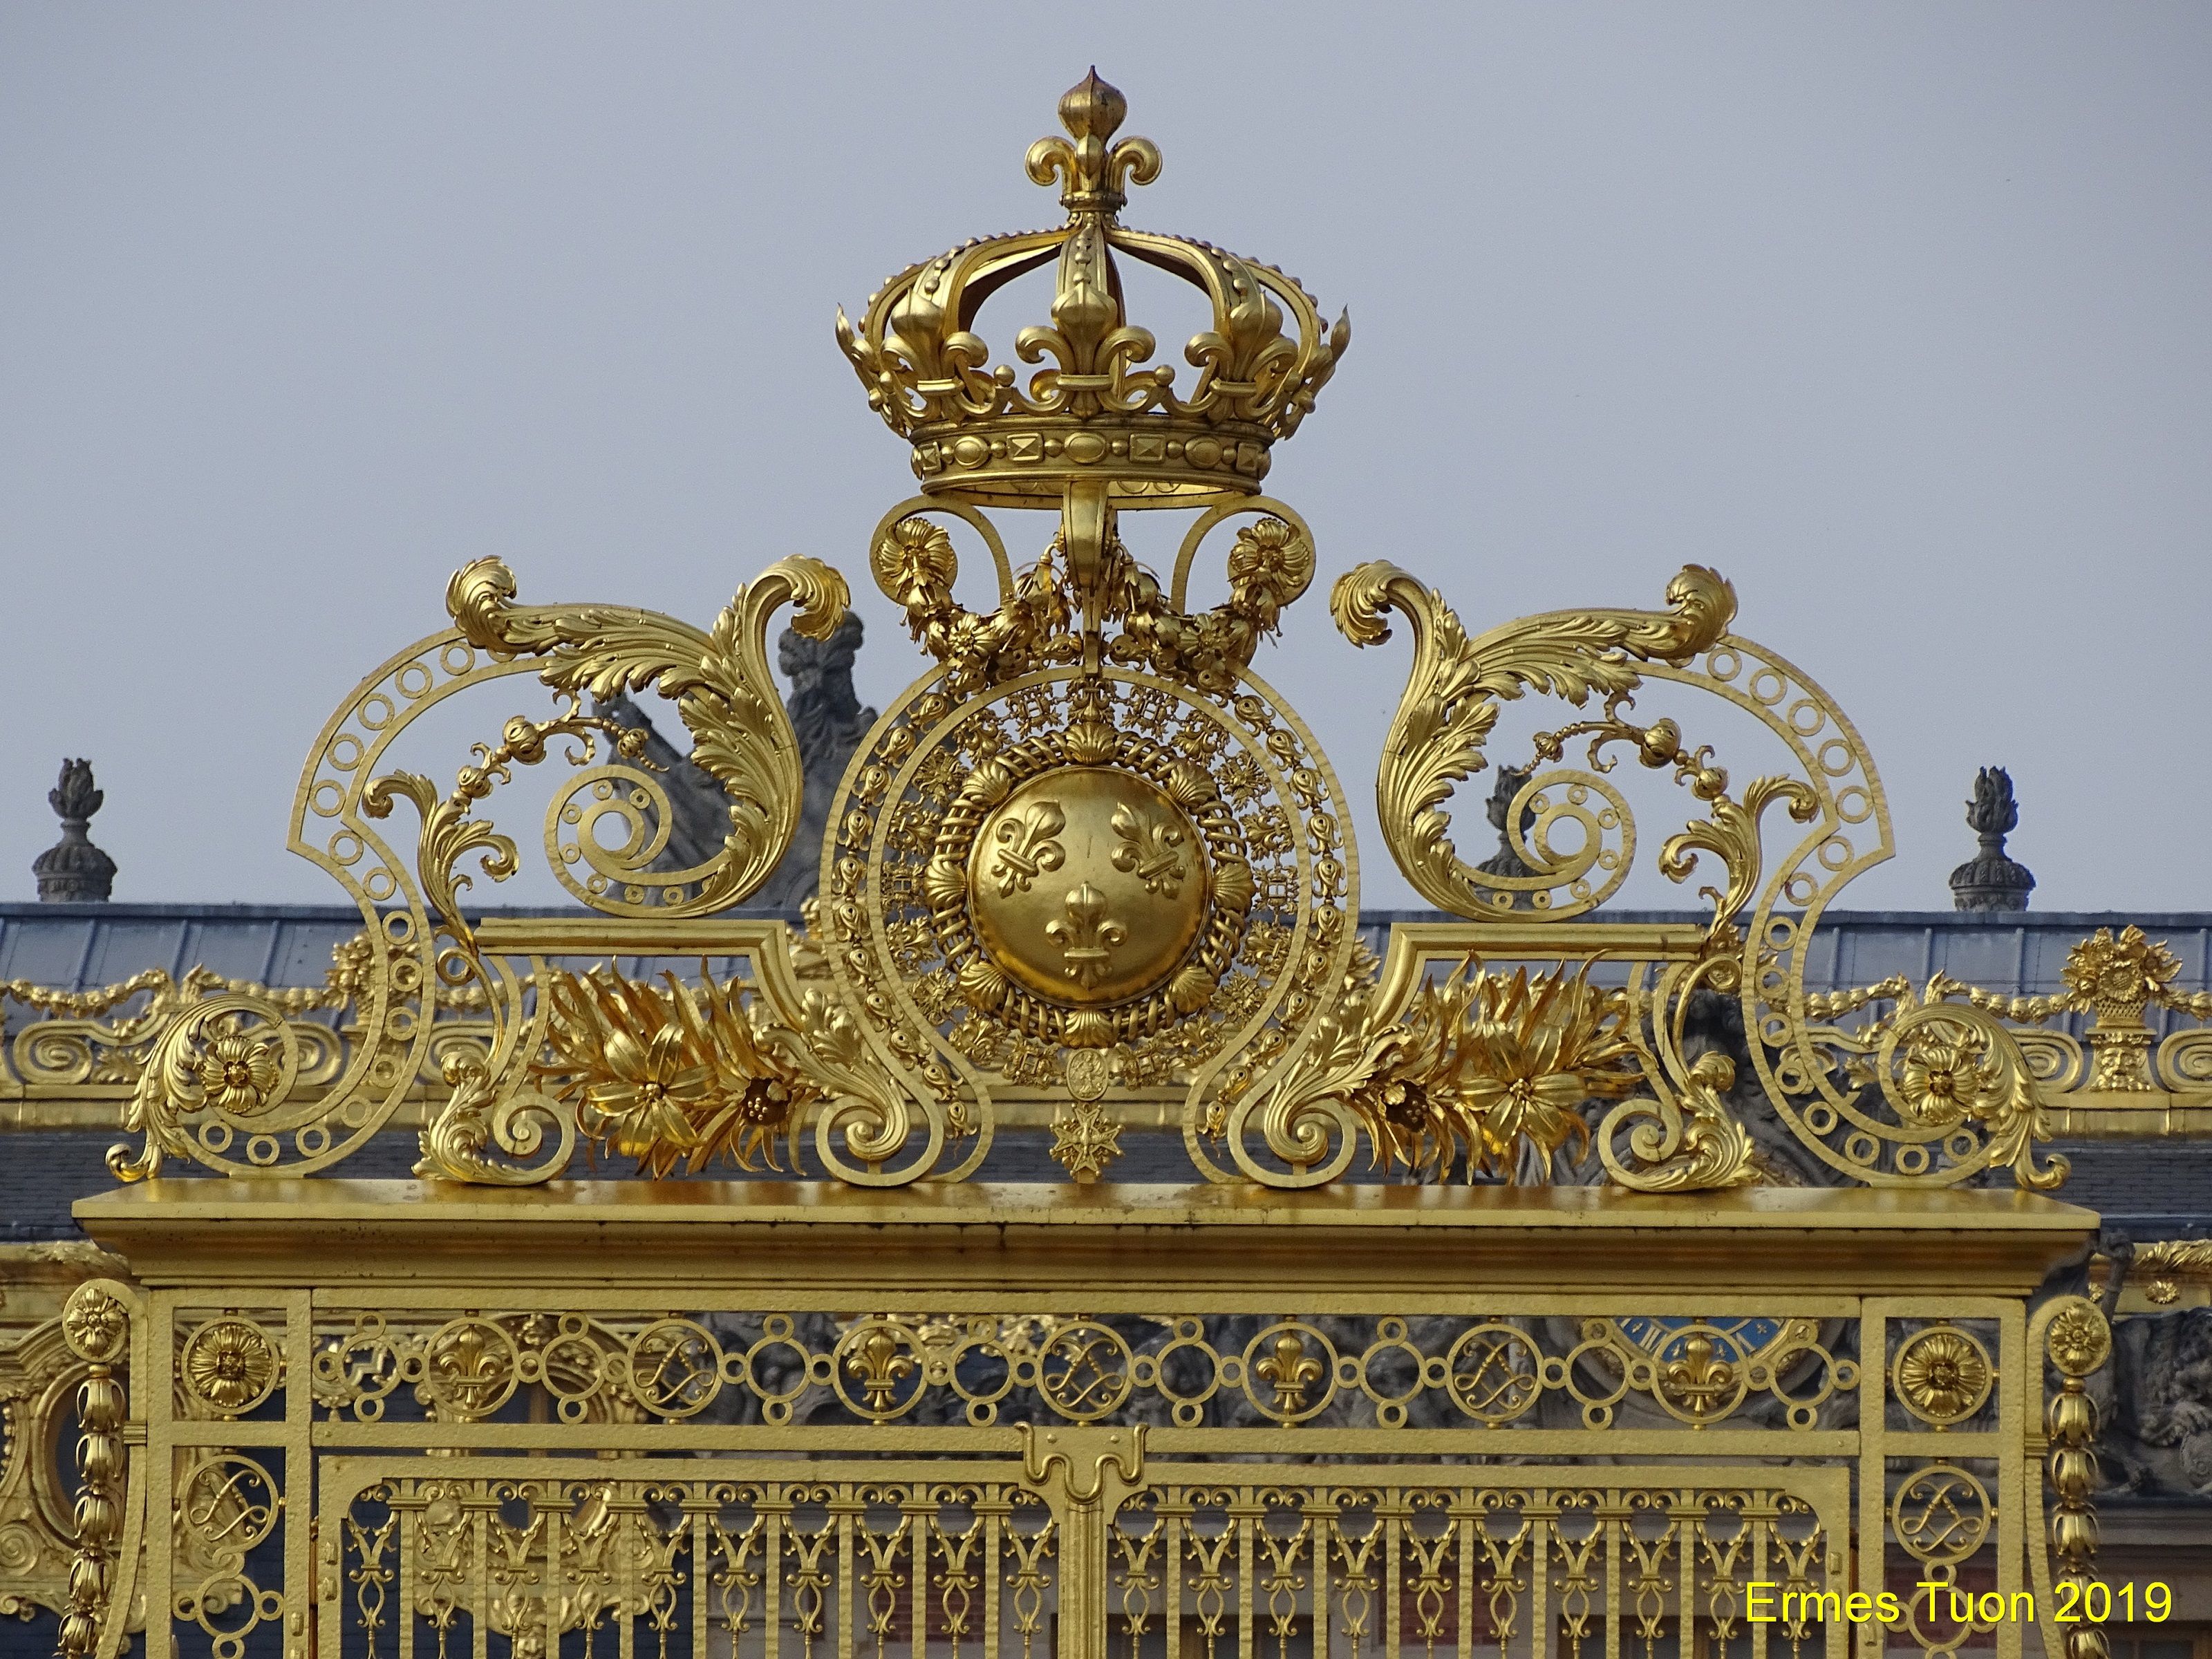 Caption: Palace de Versailles - The main Gate - Photo credit: Local Guide @ermest